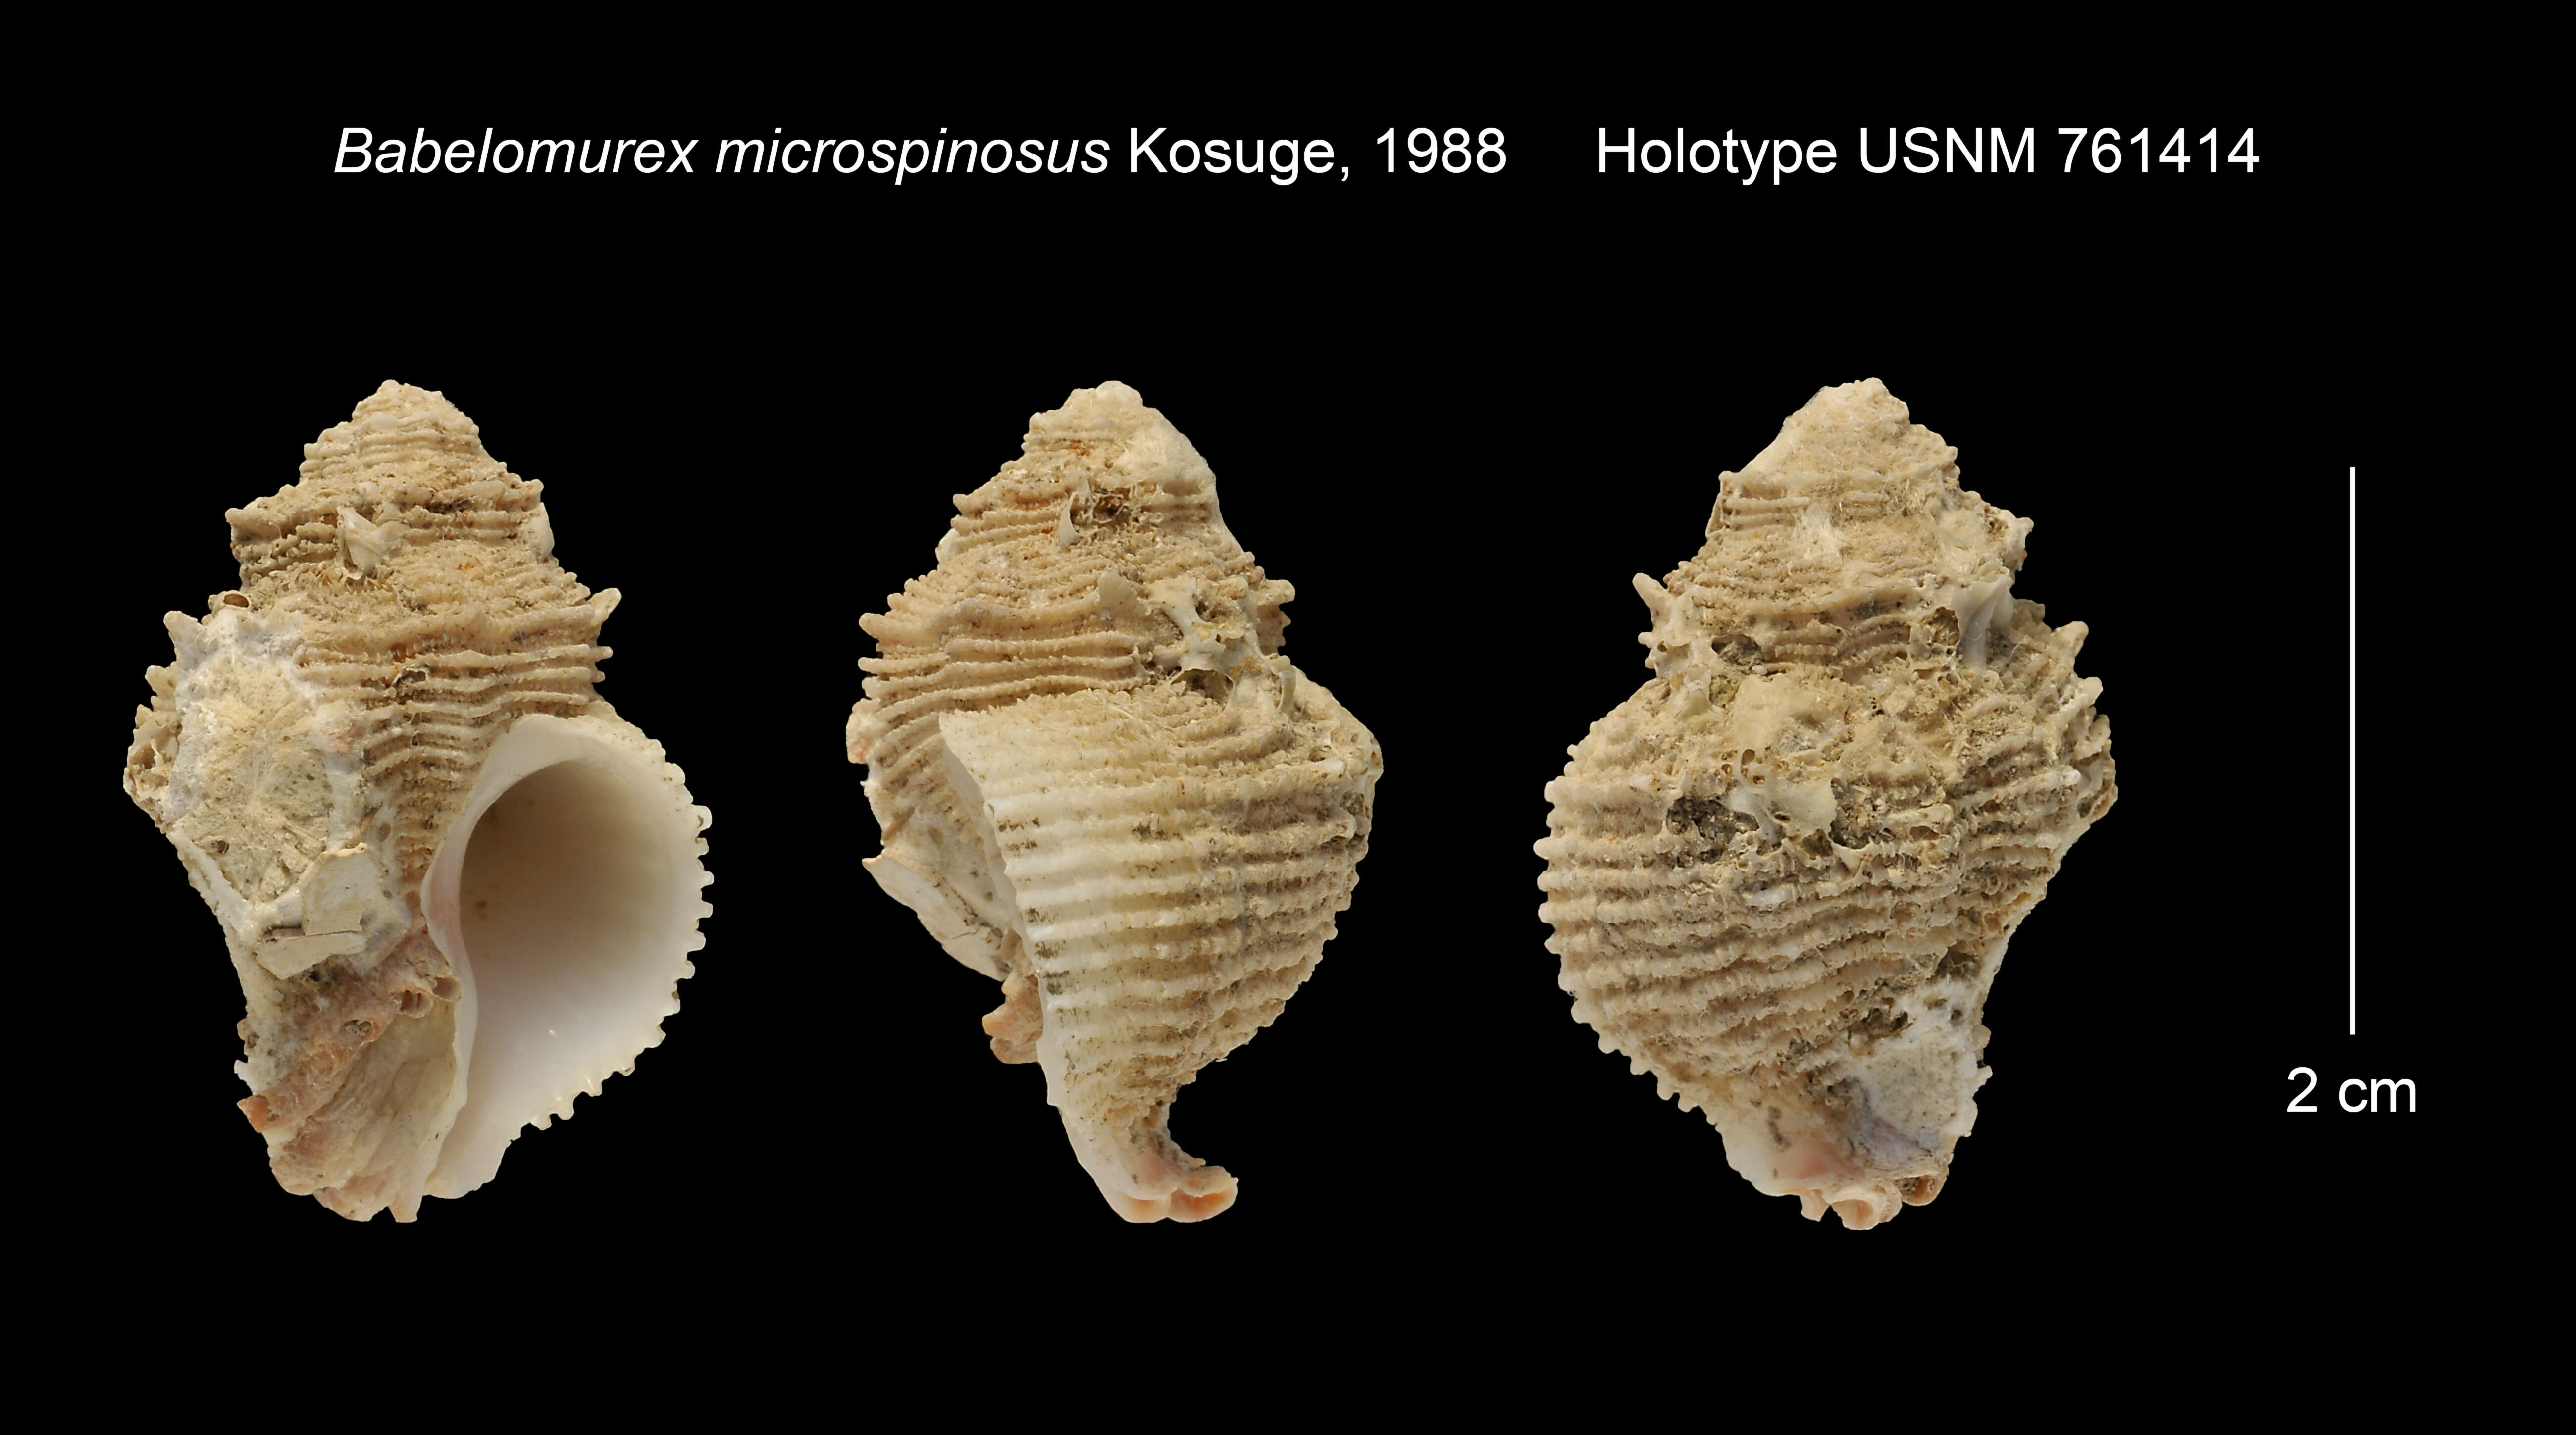 Image of Babelomurex microspinosus Kosuge 1988